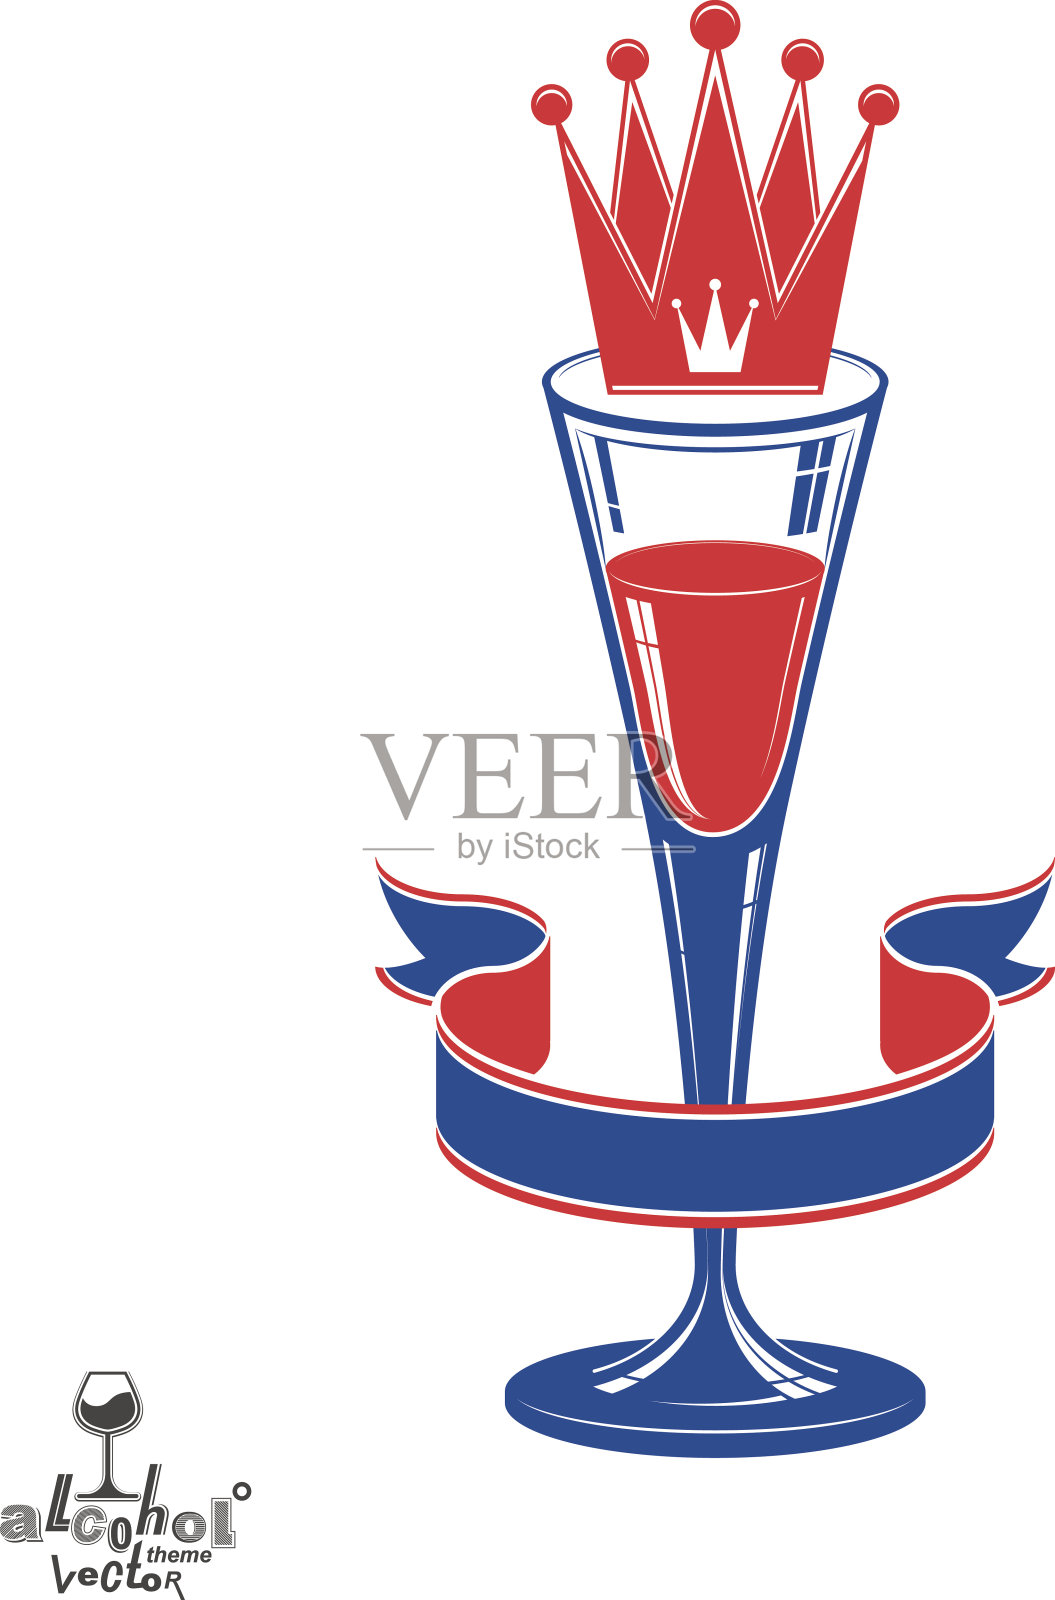 逼真的3d豪华酒杯与国王皇冠，酒精主题插画图片素材